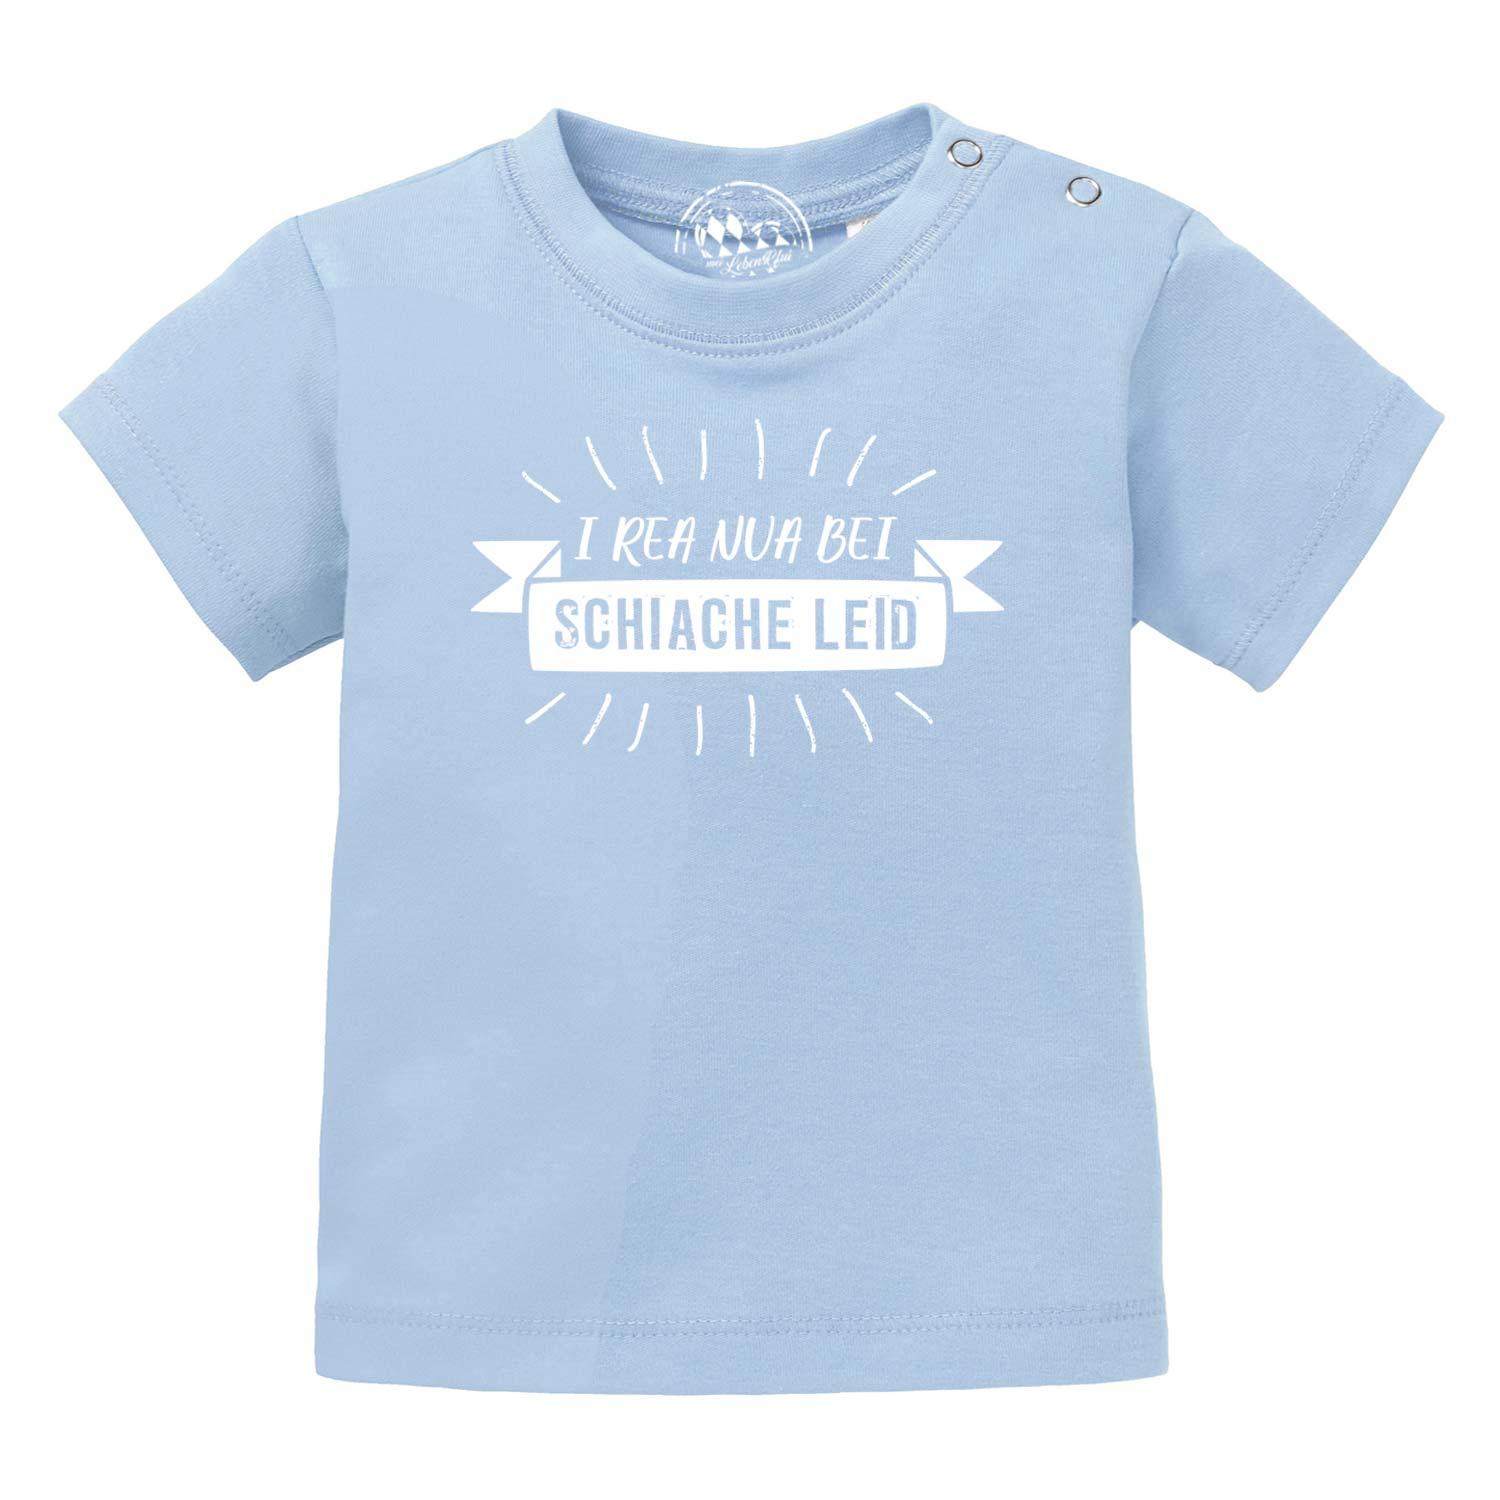 Baby T-Shirt "I rea nua..." - bavariashop - mei LebensGfui